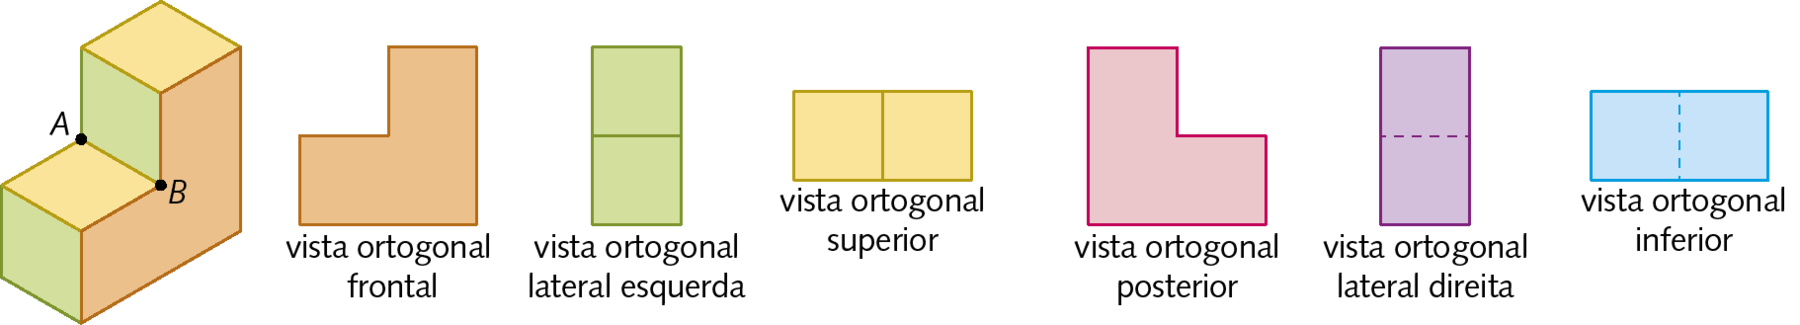 Esquema. Figura geométrica espacial, semelhante a uma escada de dois degraus. Dois vértices A e B e a aresta AB estão destacados. Ao lado direito estão representadas a vista ortogonal frontal: figura alaranjada em formato de L invertido verticalmente; a vista ortogonal lateral esquerda: dois quadrados verdes na vertical; a vista ortogonal superior: dois quadrados amarelos lado a lado na horizontal; a vista ortogonal posterior: figura vermelha em formato de L; a vista ortogonal lateral direita: dois quadrados roxos na vertical; a vista ortogonal inferior: dois quadrados azuis lado a lado na horizontal.